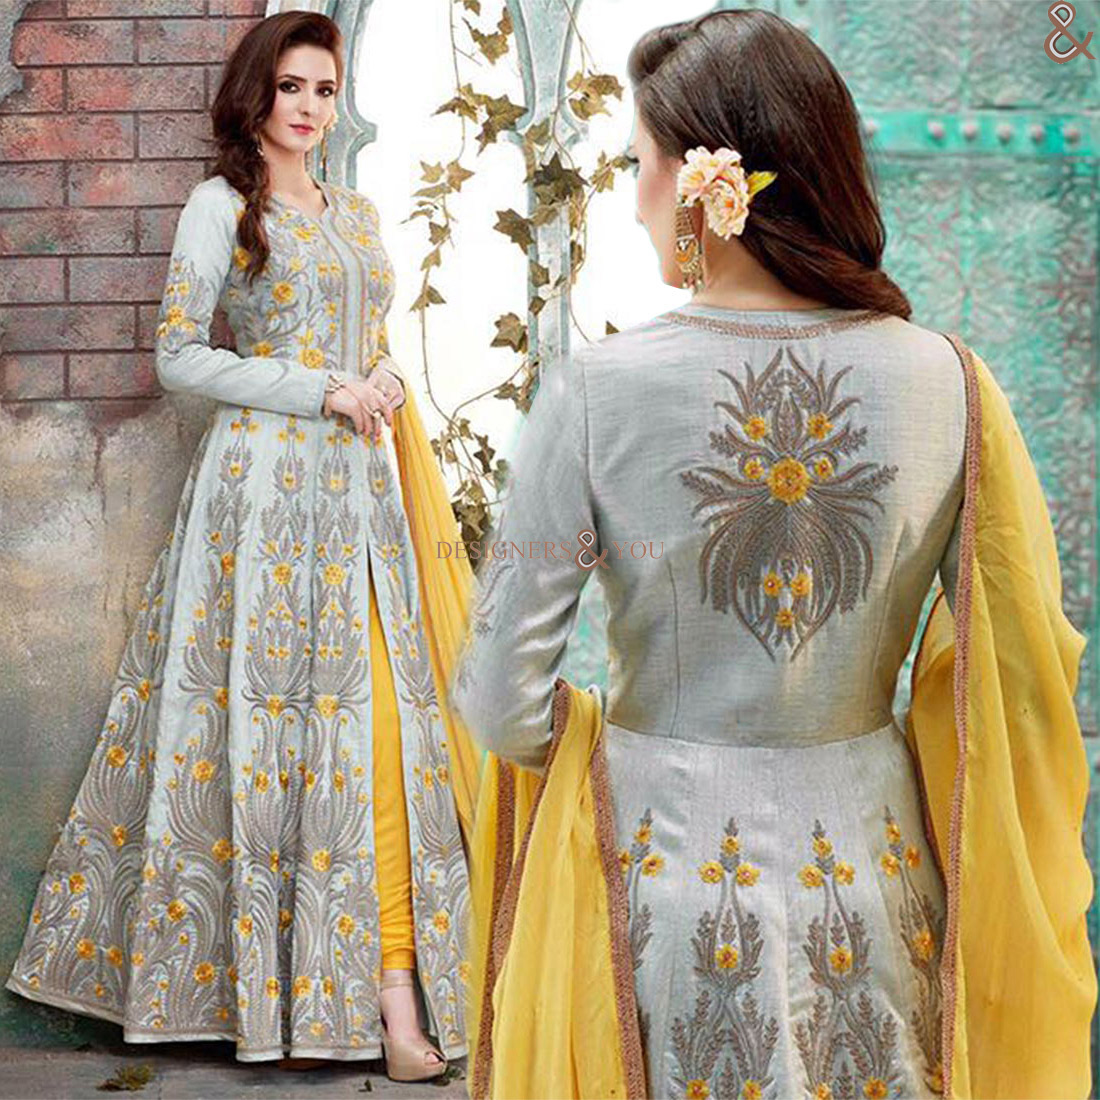 designersandyou Anarkali dresses suits Anarkali dresses ANARKALI SUITS suits online designer floral anarkali